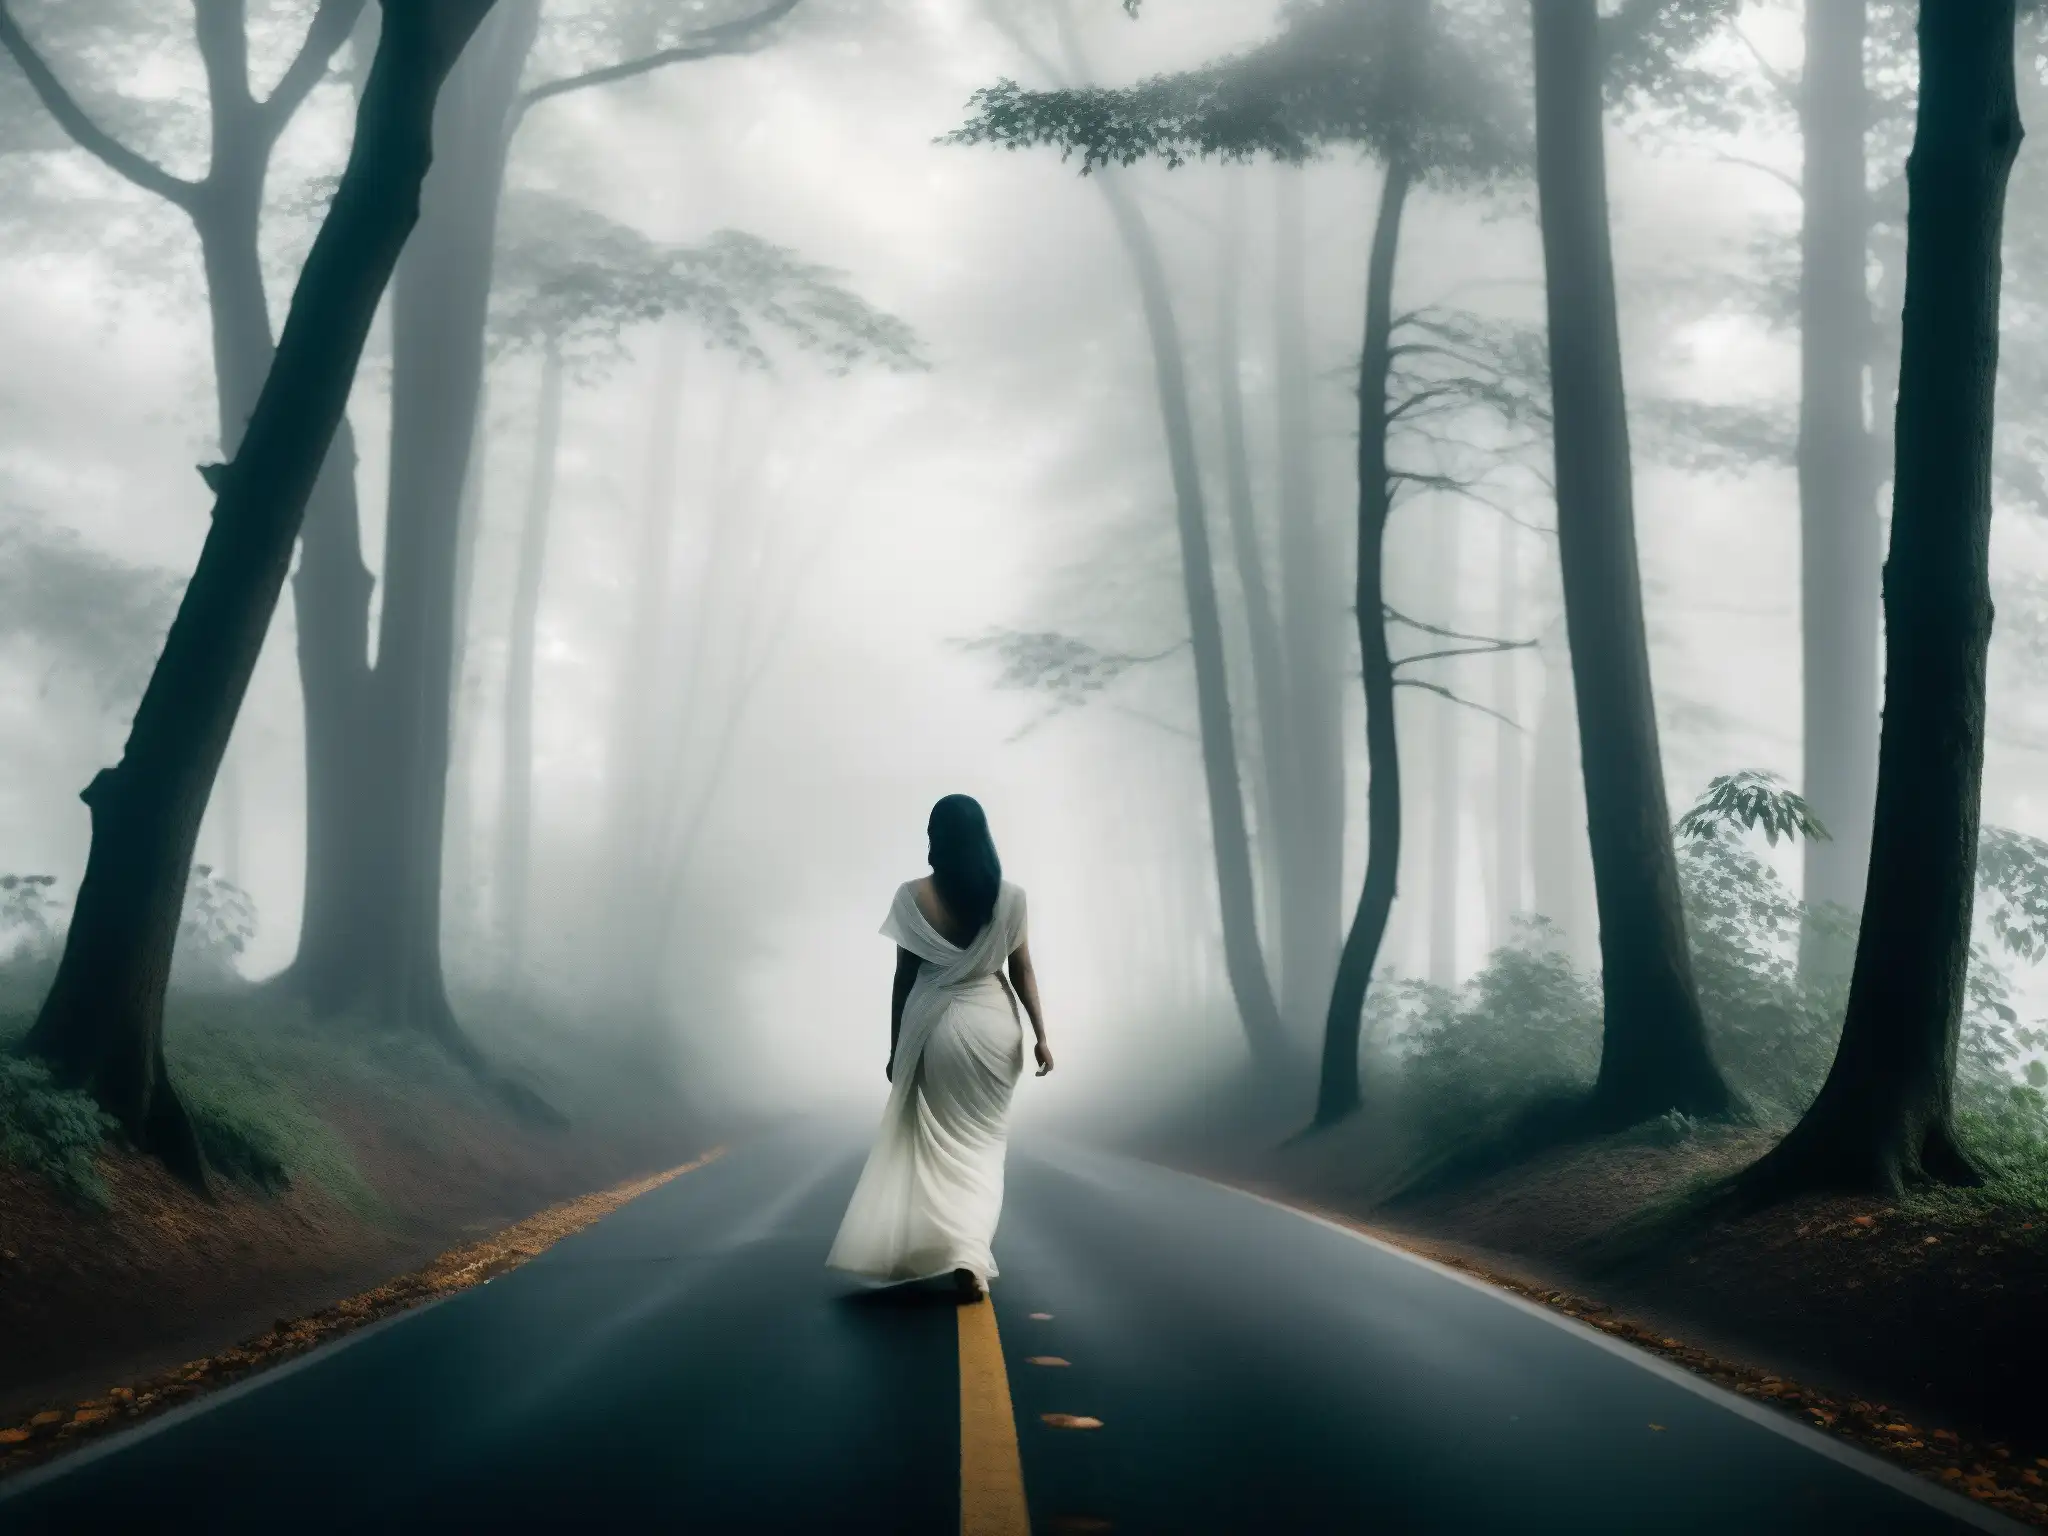 Una misteriosa figura femenina en un sari blanco se yergue en una curva neblinosa de la carretera, entre árboles en Bengaluru